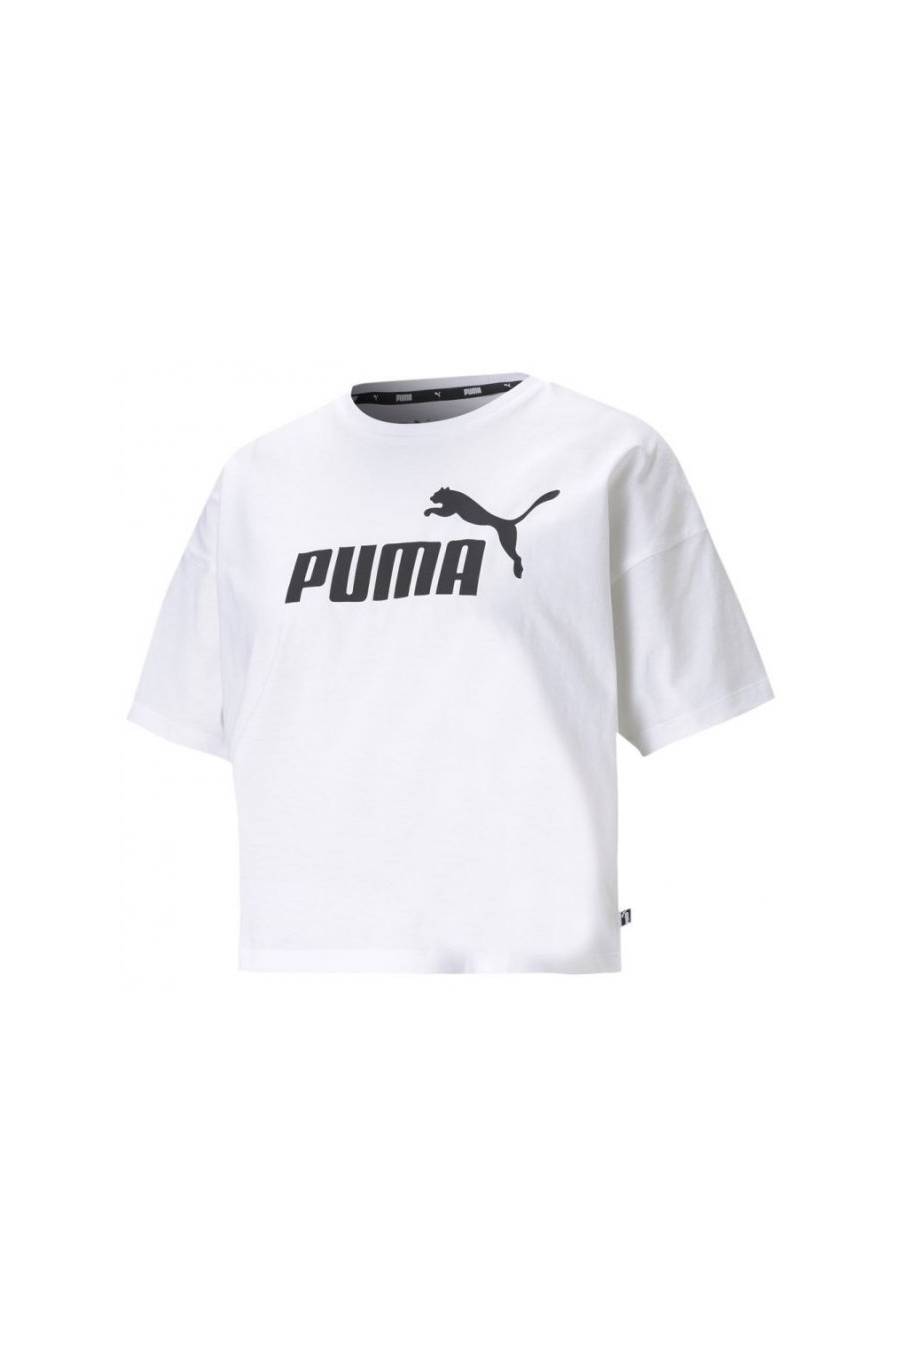 Camiseta Puma ESS Cropped Logo 58686602 - masdeporte -msdsoport